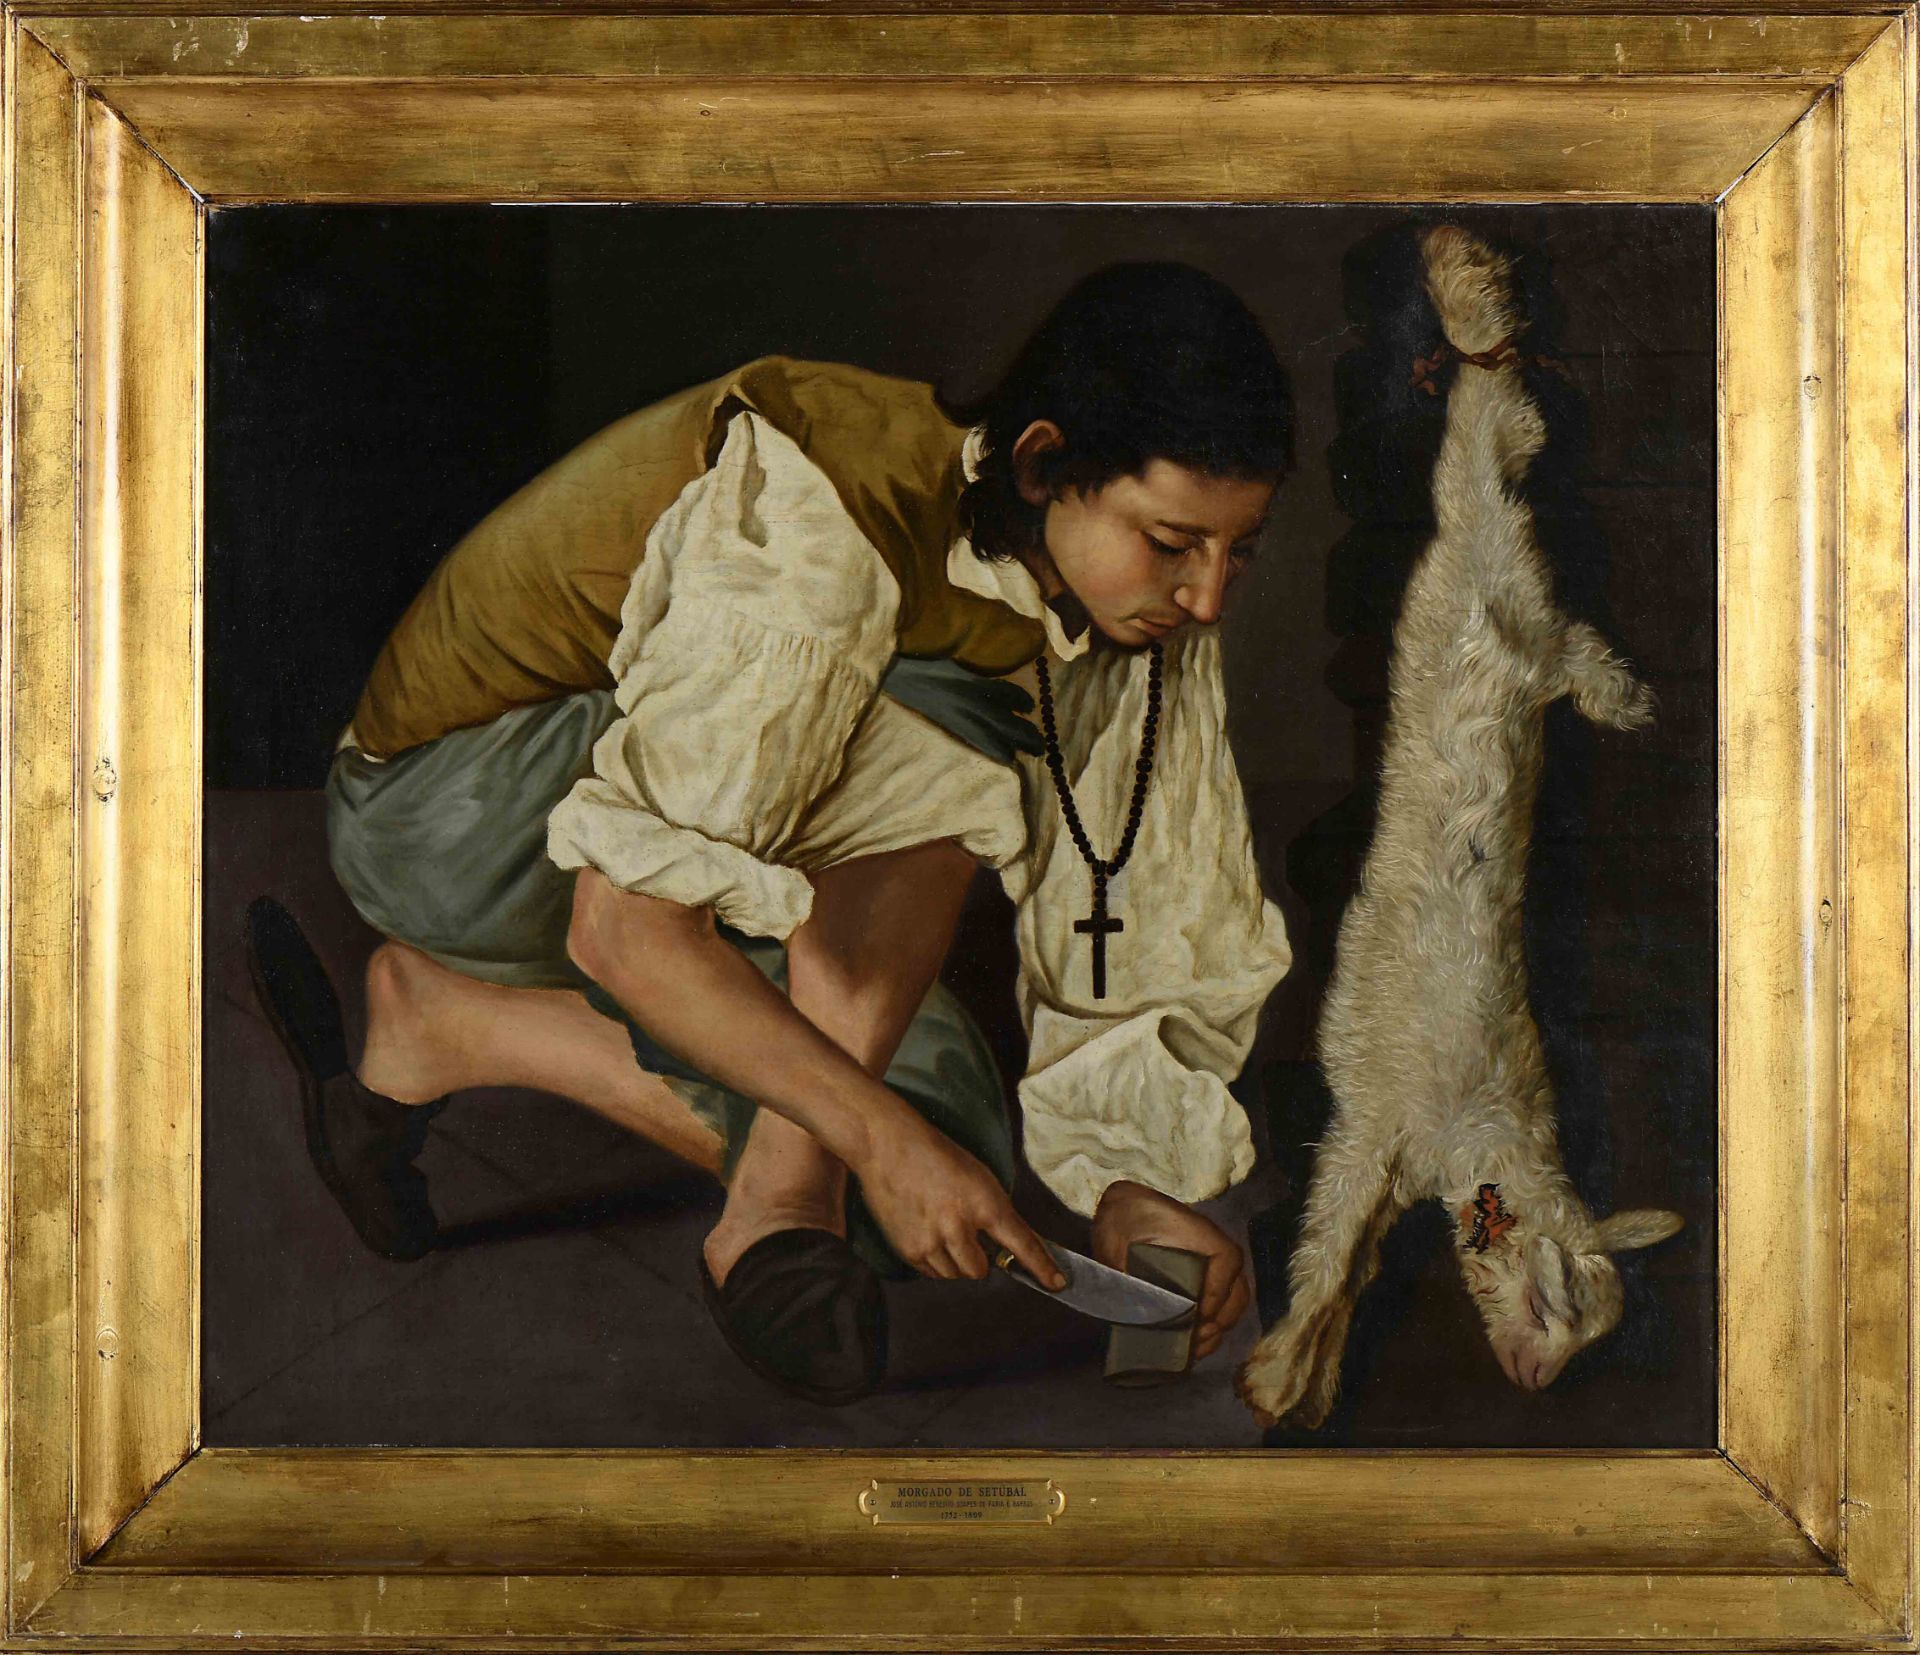 MORGADO DE SETÚBAL (JOSÉ ANTÓNIO BENEDITO SOARES DA GAMA DE FARIA E BARROS) - 1752-1809 A boy slayin